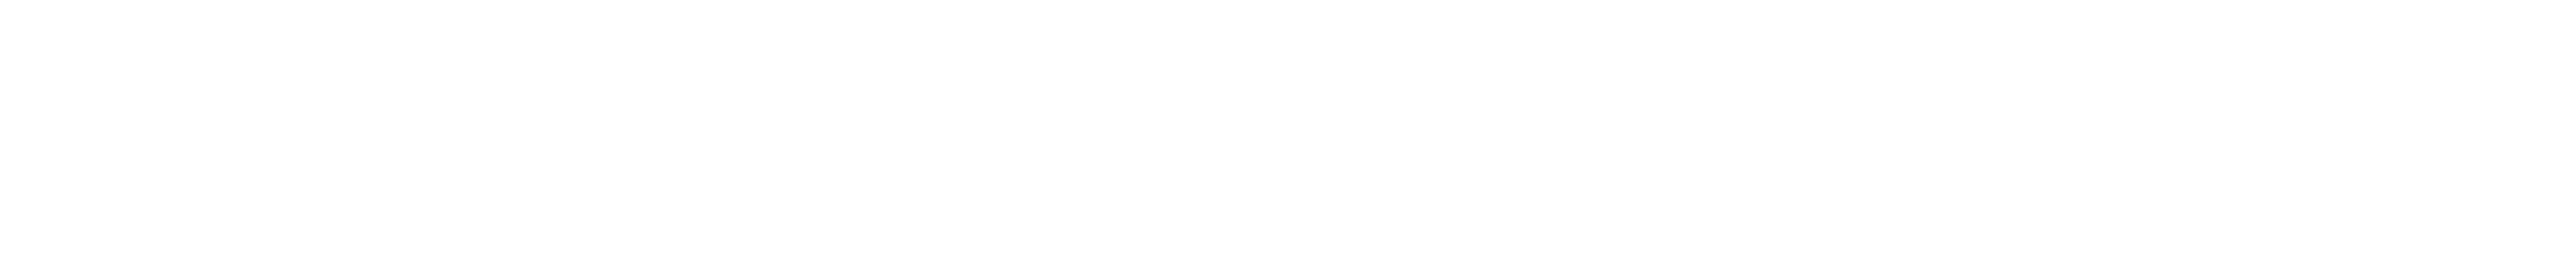 وليد محمد الطاهر stylish signature style. Best Handwritten Sign (Andilay-7BmLP) for my name. Handwritten Signature Collection Ideas for my name وليد محمد الطاهر. وليد محمد الطاهر signature style 4 images and pictures png